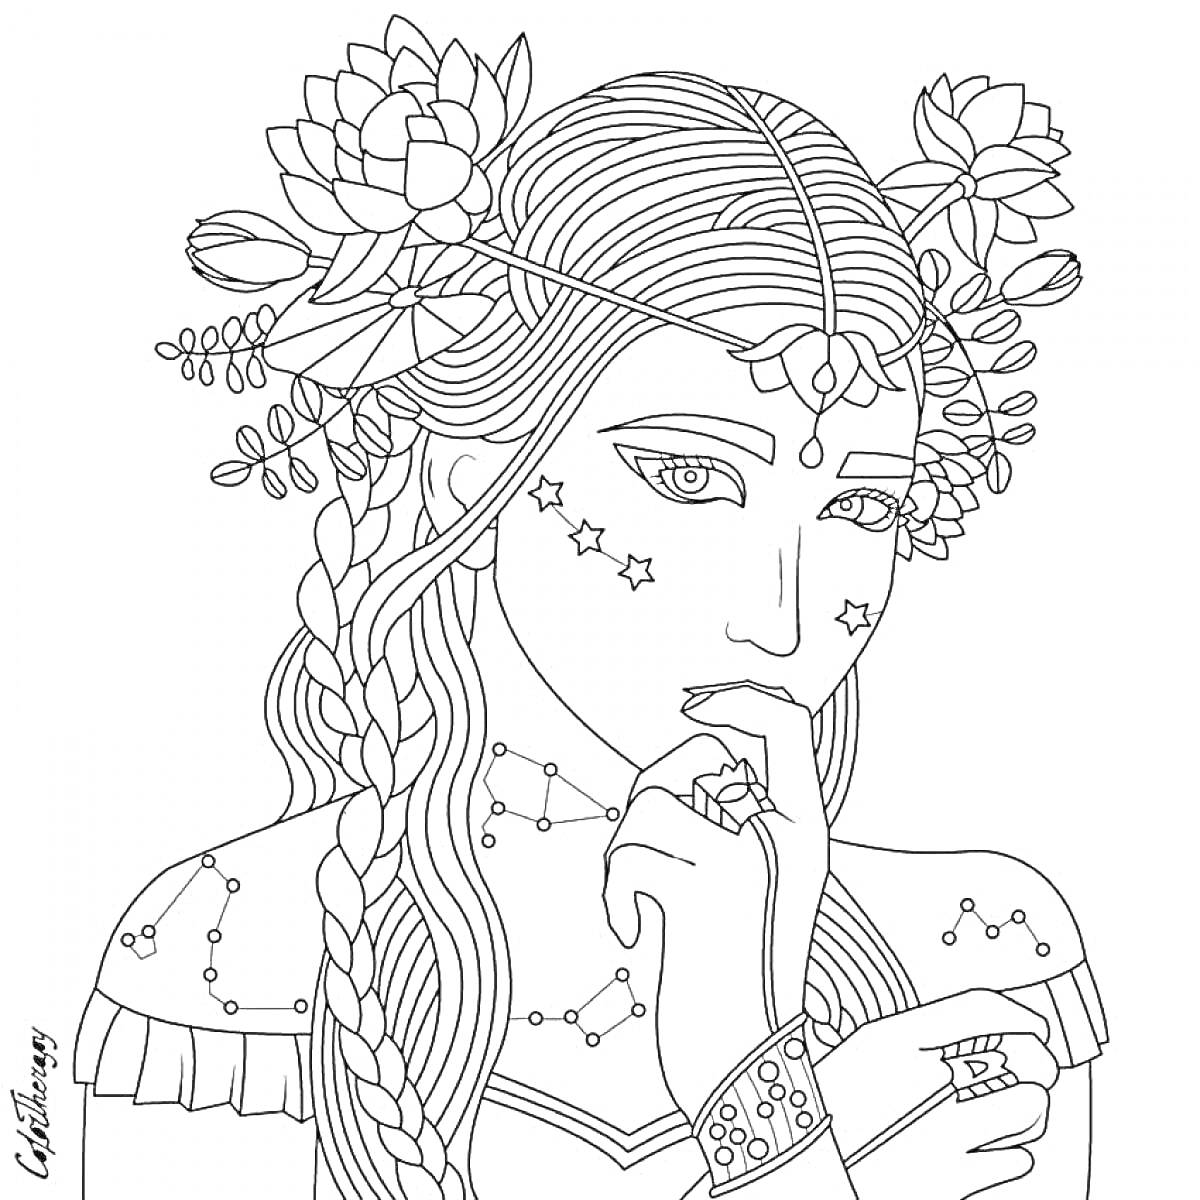 Раскраска Девушка с длинными косами и венком из цветов и листьев, со звездами на лице и украшениями на руках.